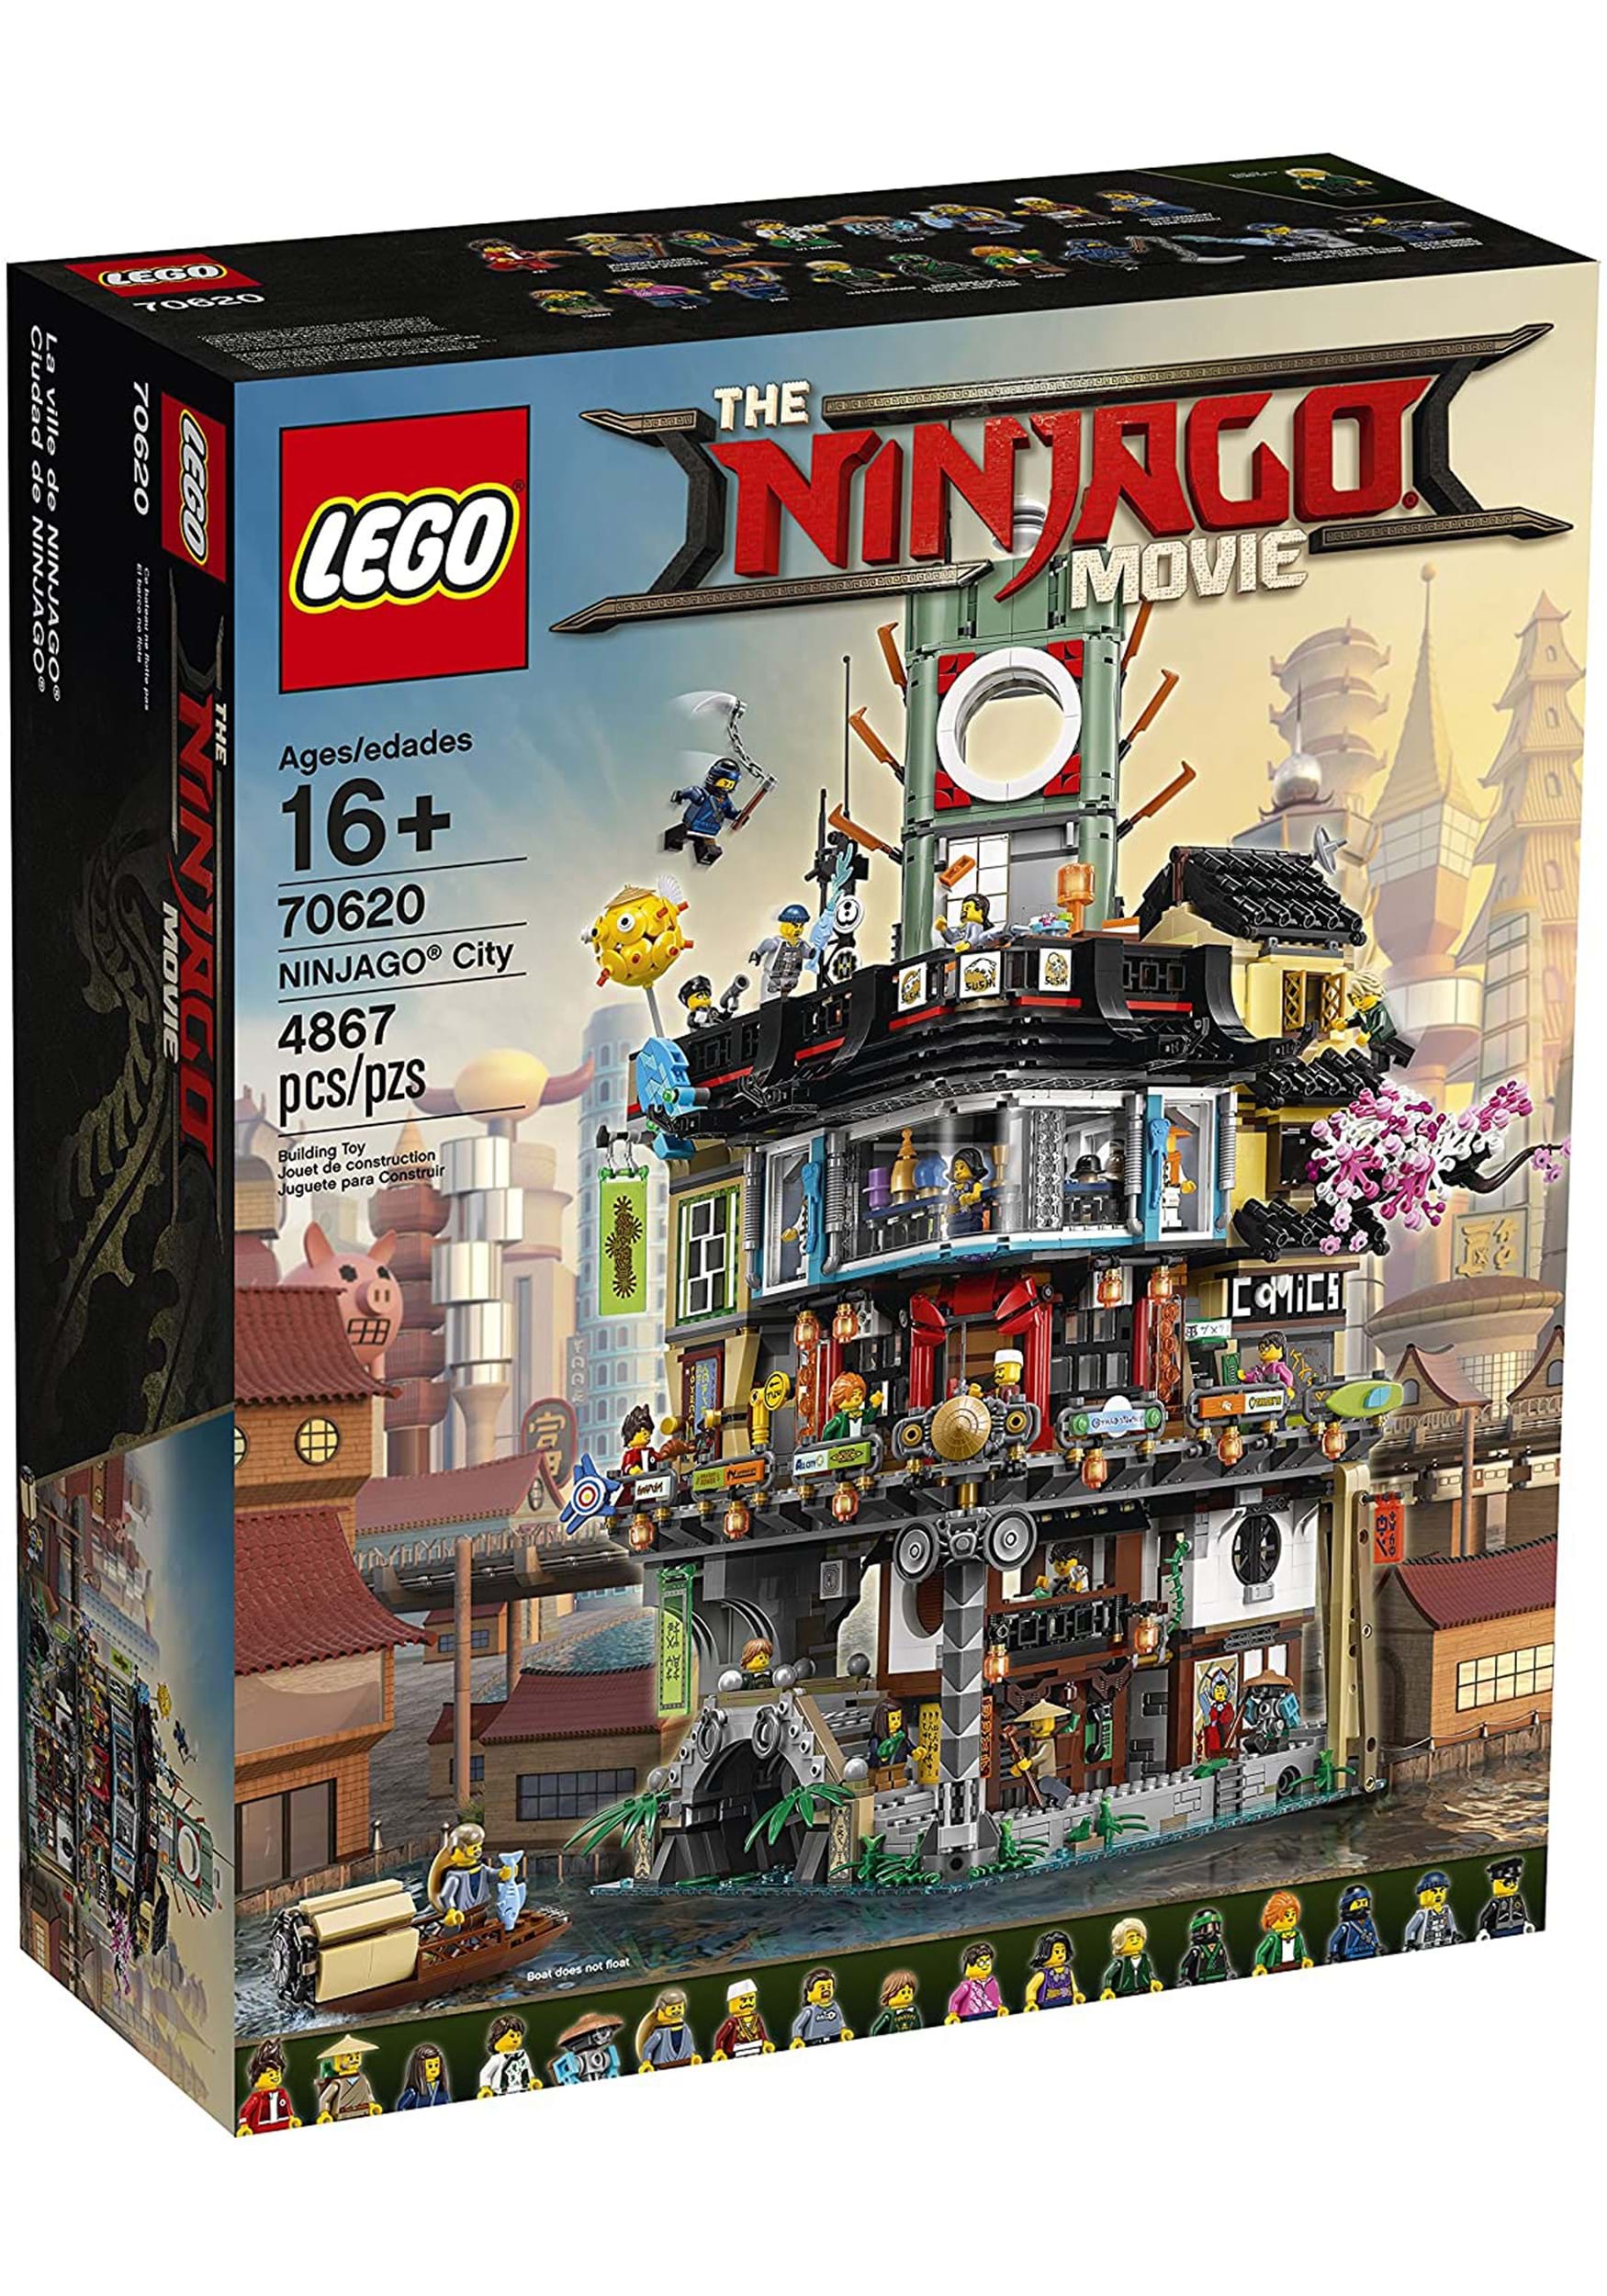 LEGO: The Ninjago Movie Ninjago City Building Set